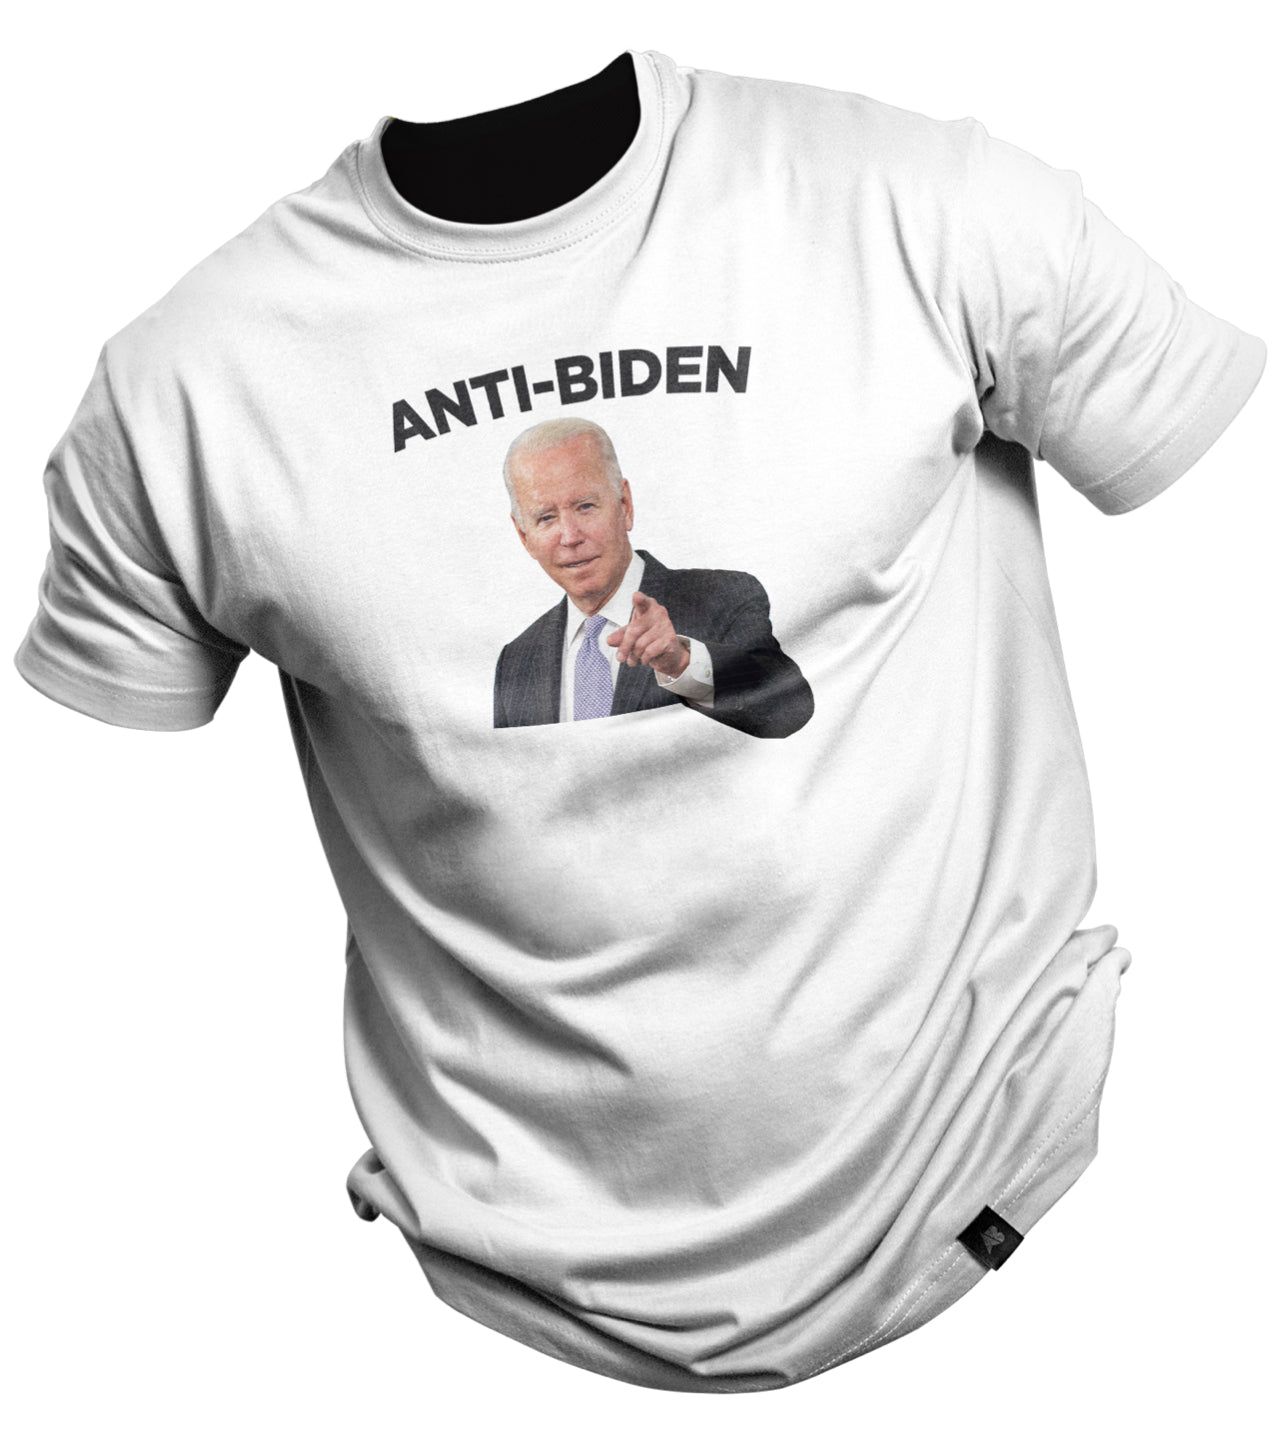 Anti-Biden!